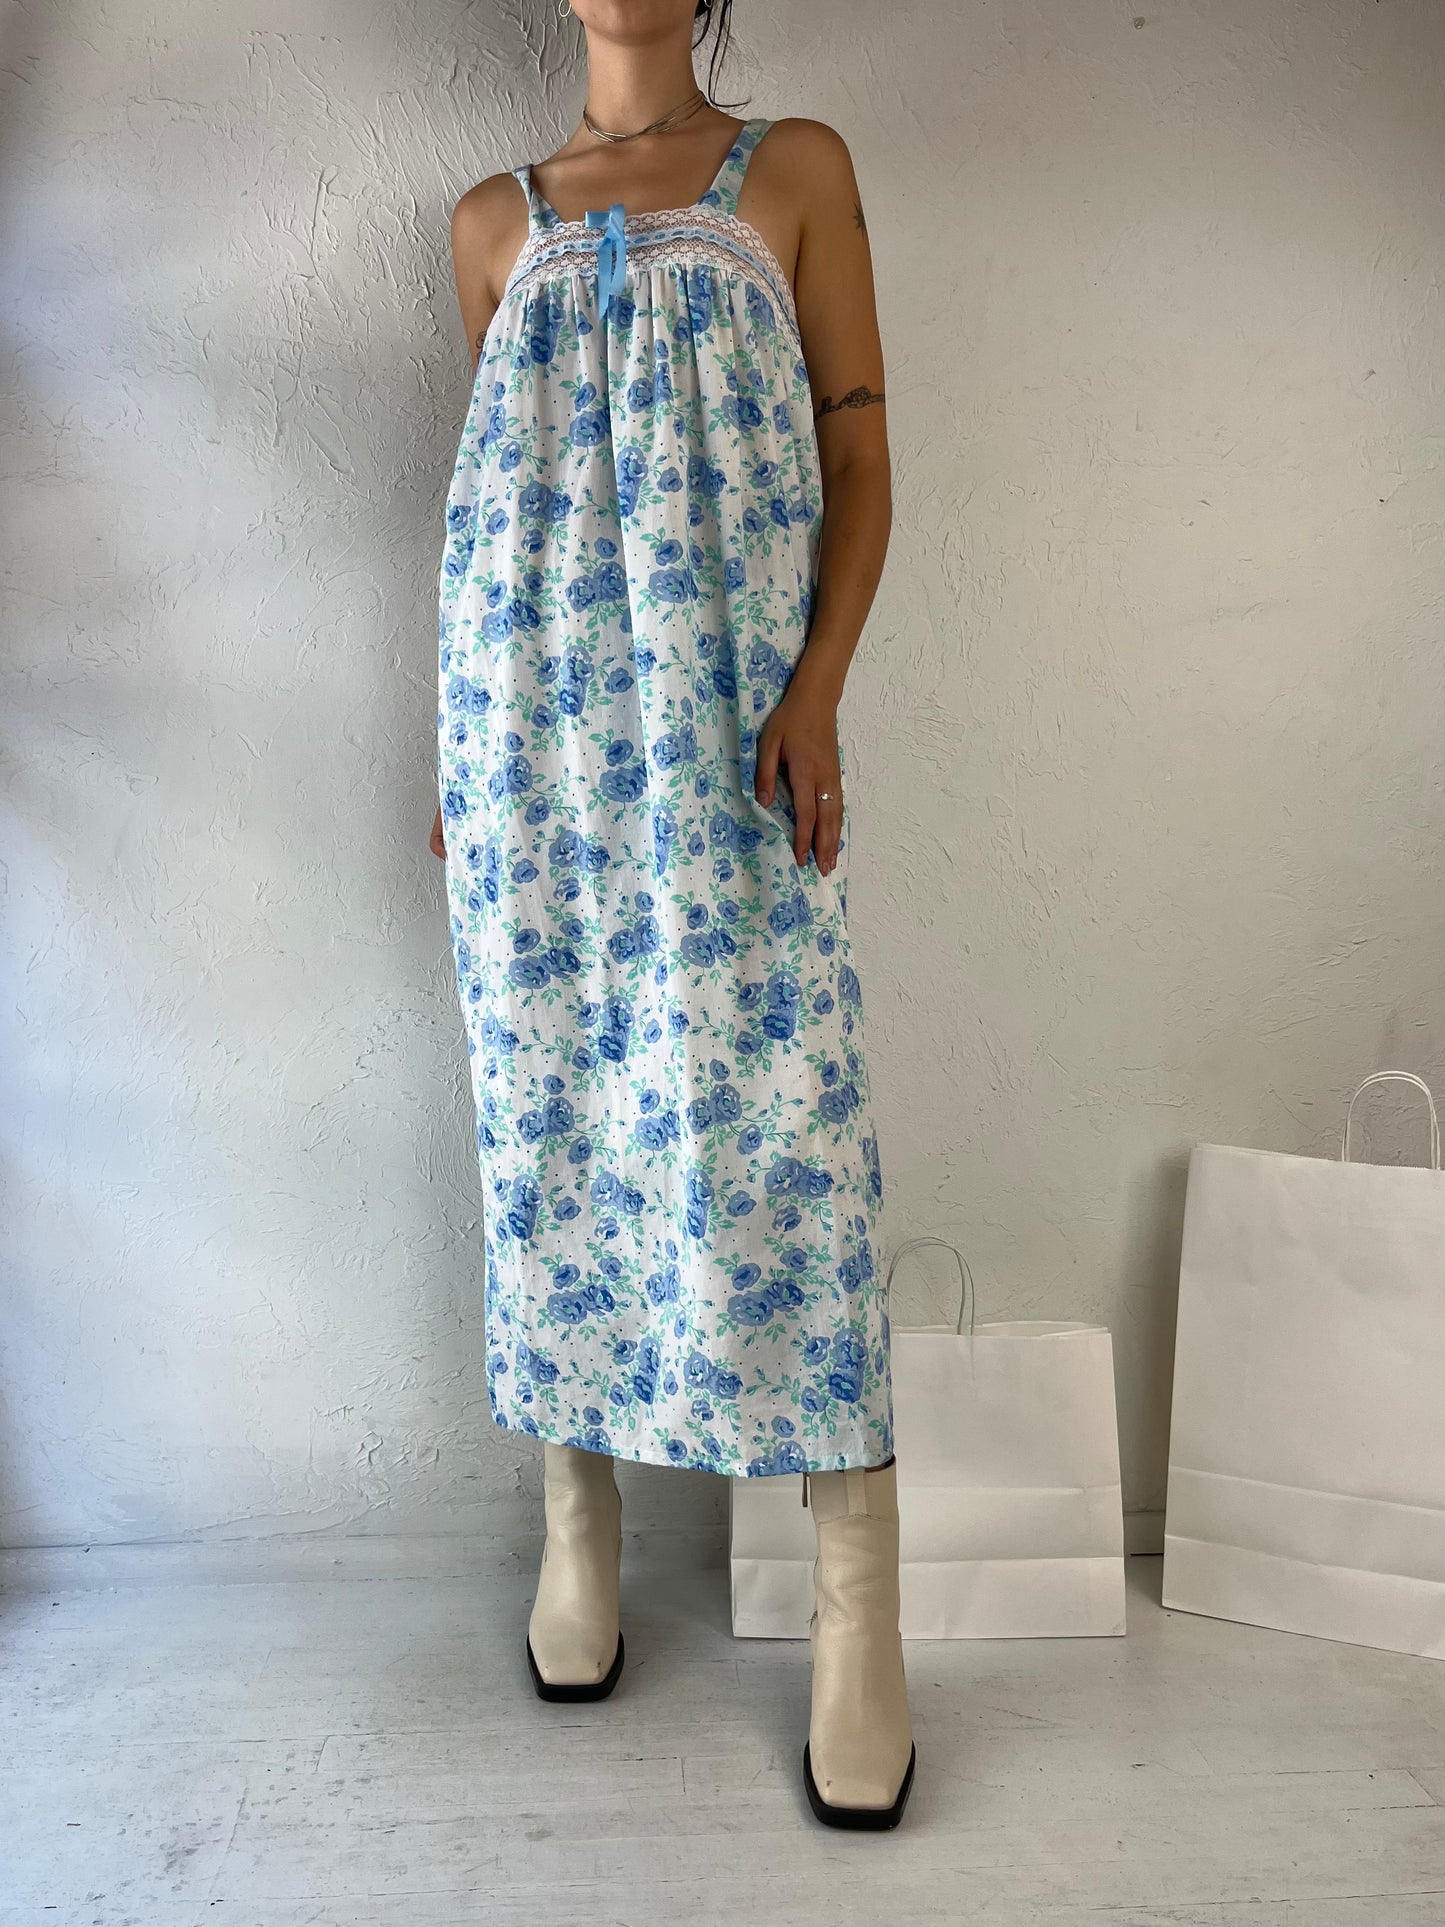 90s Blue Floral Print Cottage Core Dress / Medium